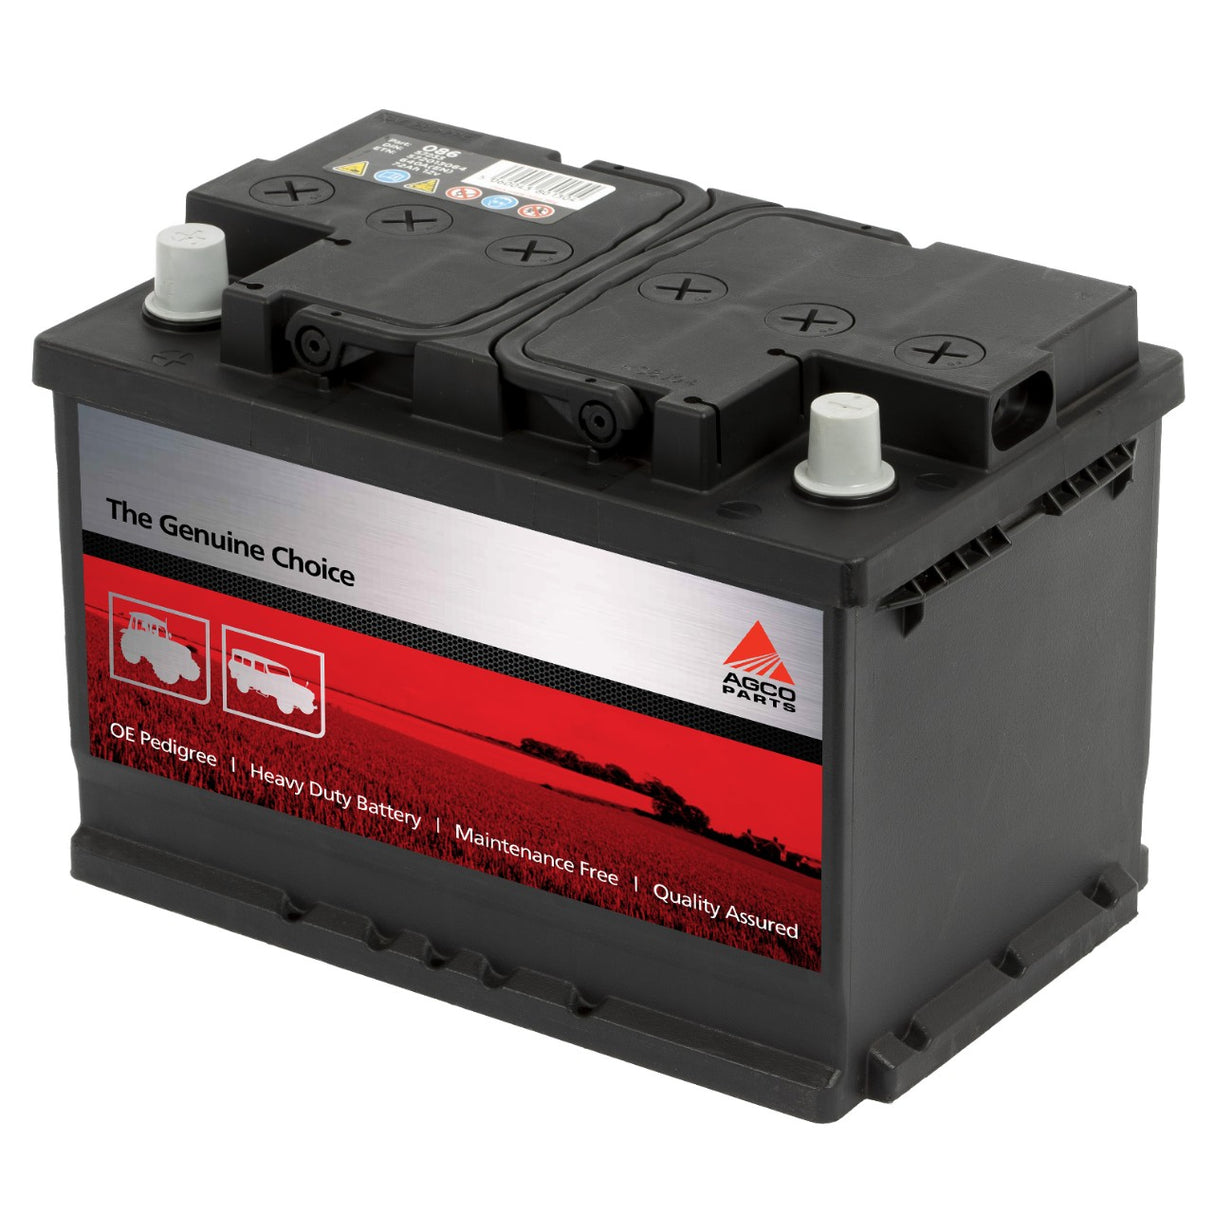 AGCO | AGCO Parts Battery - 3933364M1 - Farming Parts